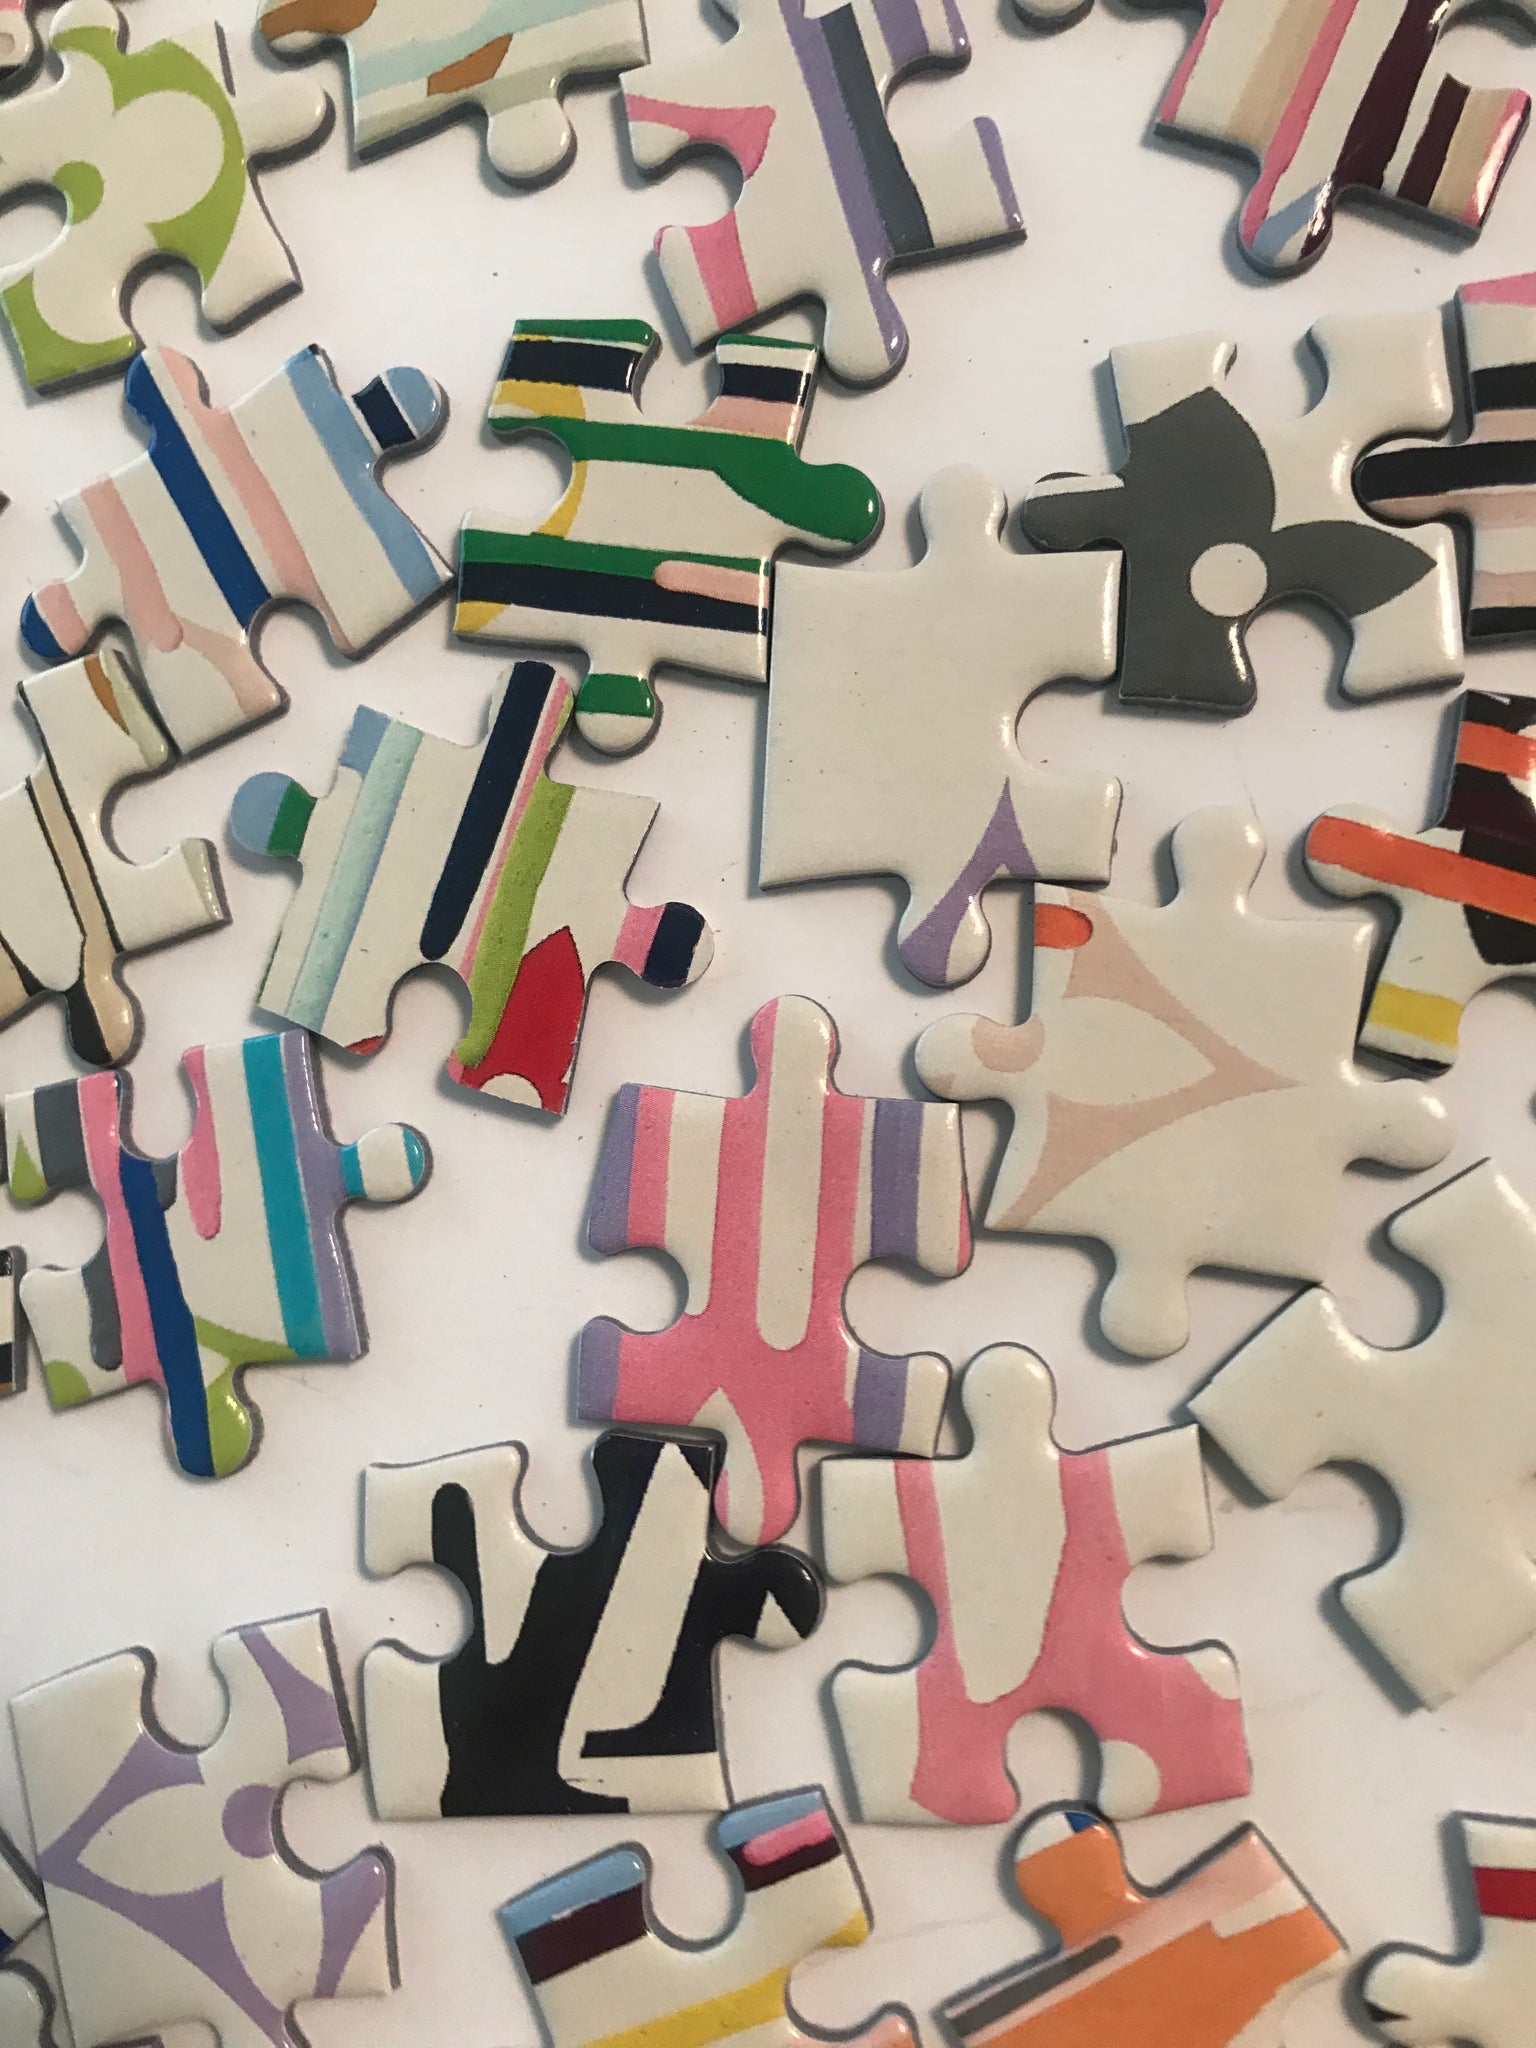 Zevs Jigsaw 2020 Collector Edition Puzzle - Artxpuzzles – Art x